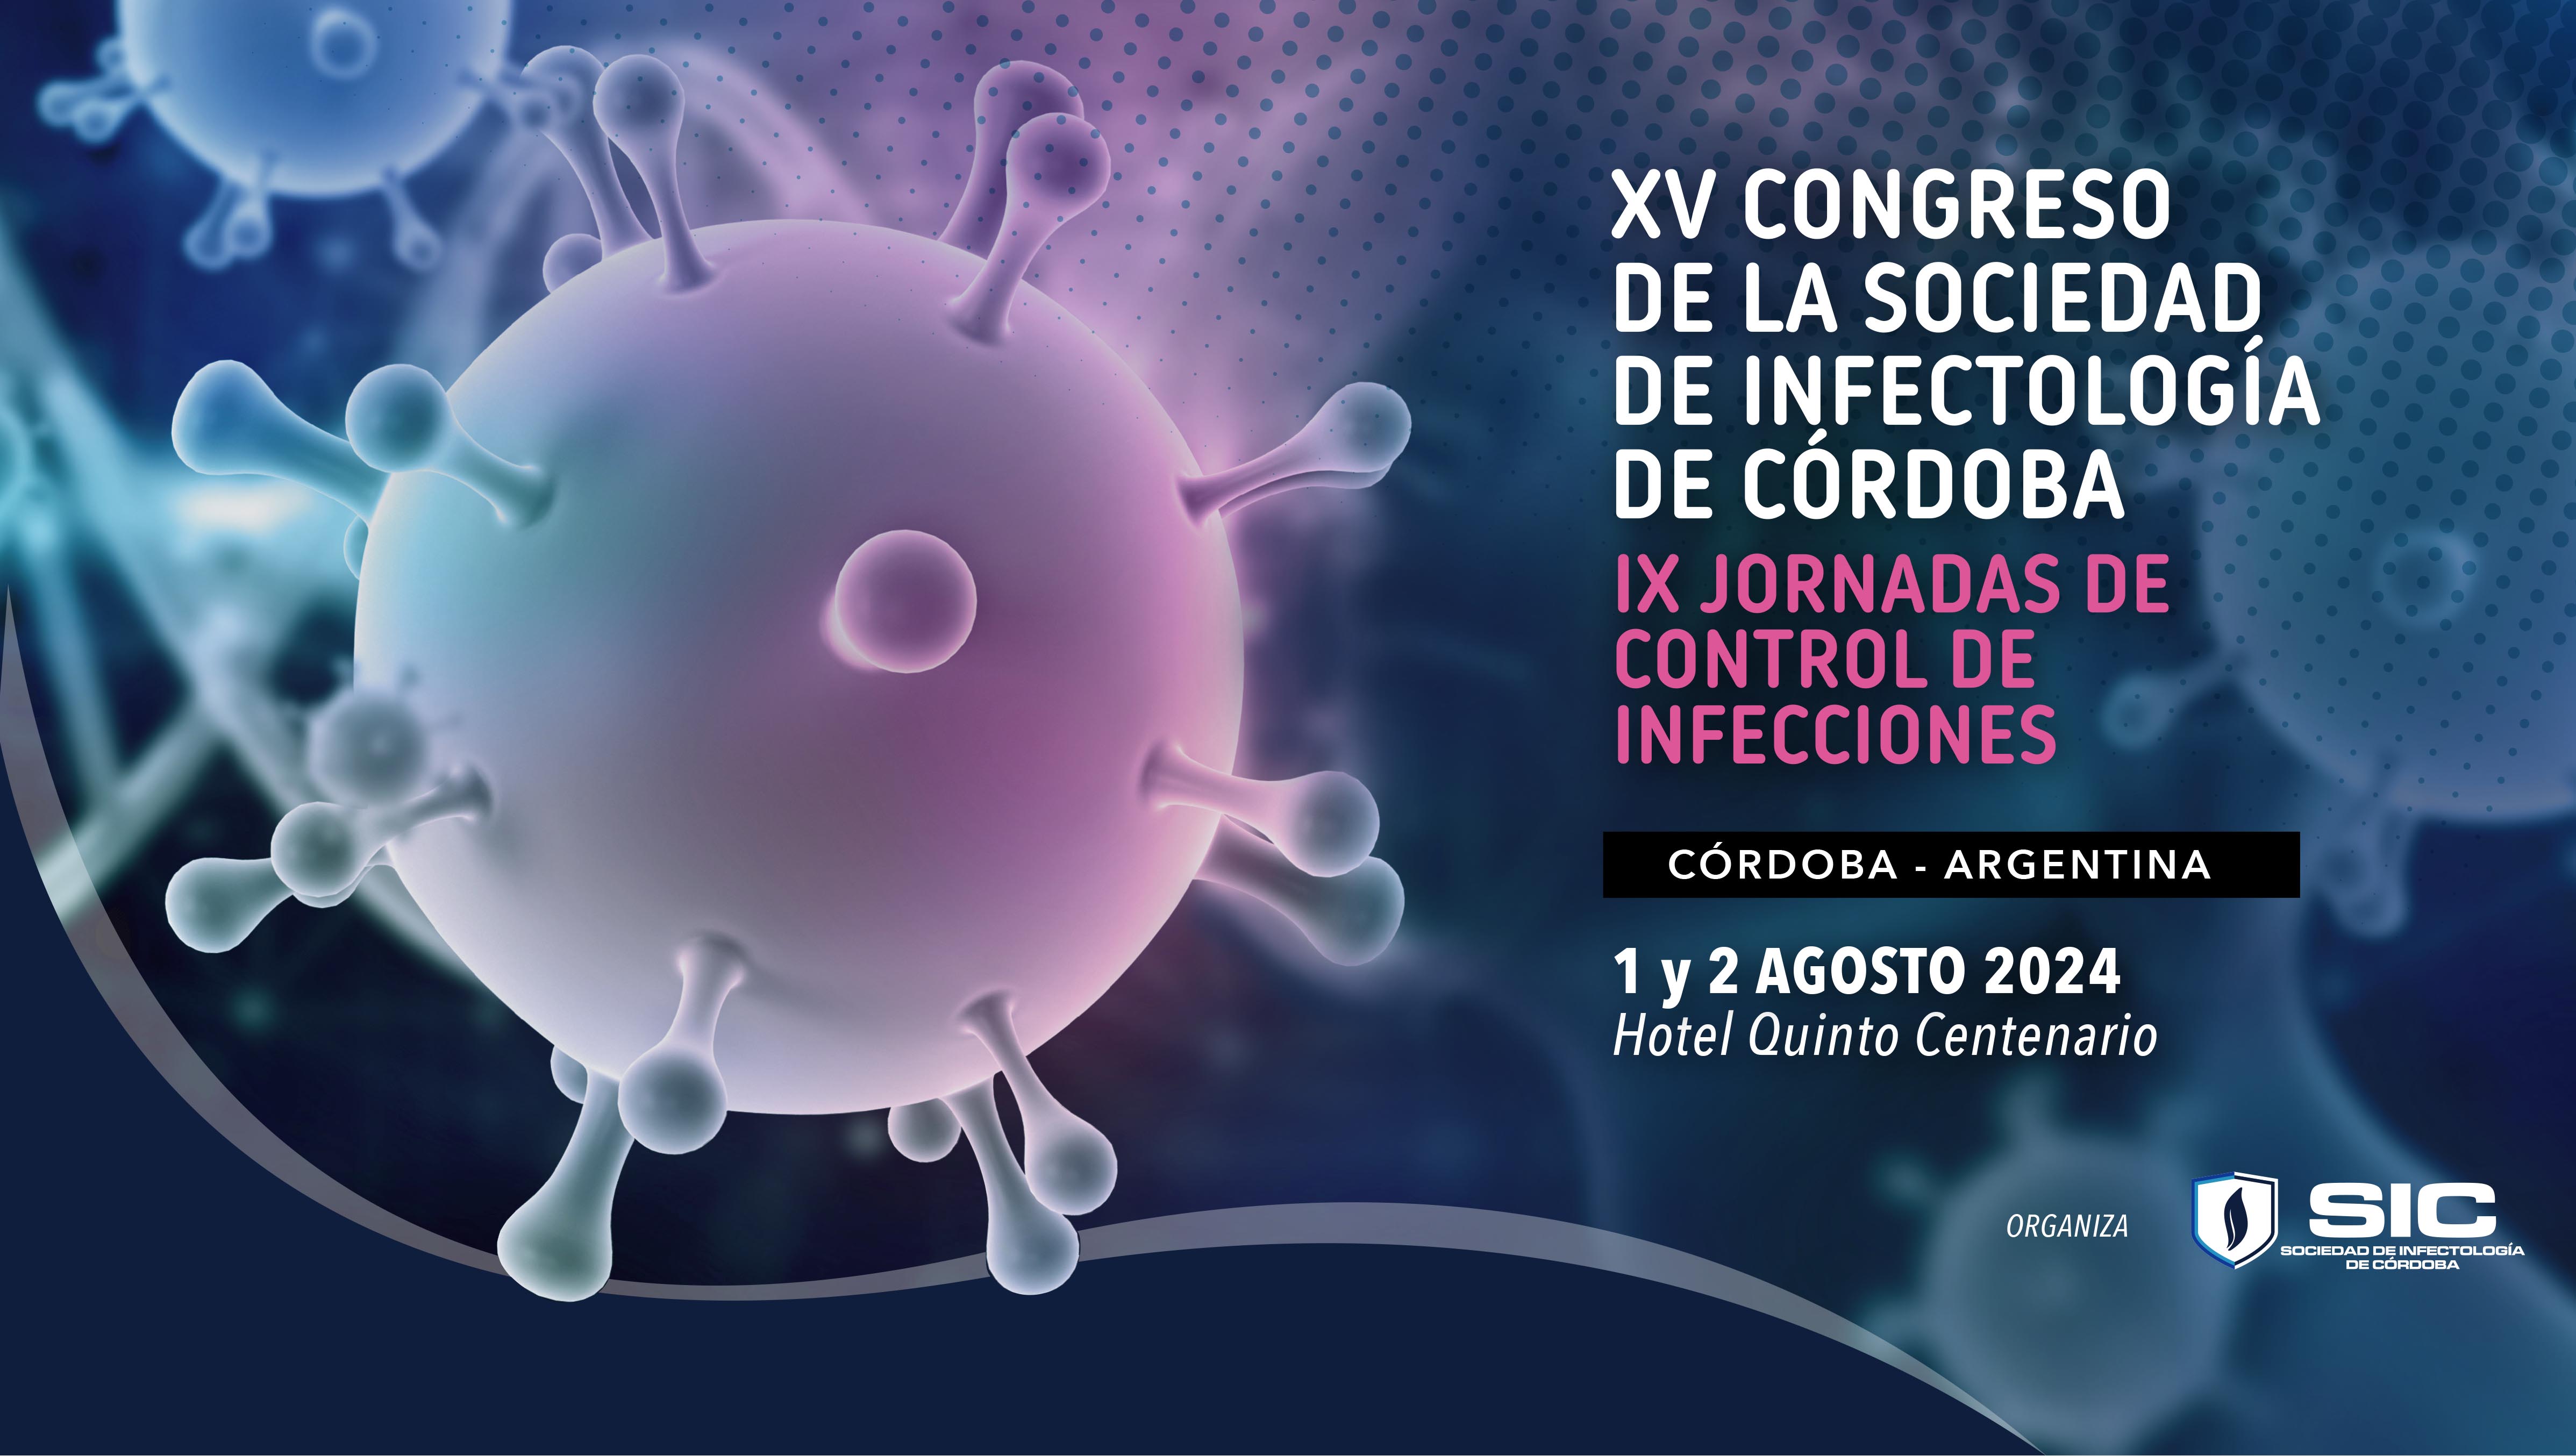 XV Congreso de la Sociedad de Infectología de Córdoba